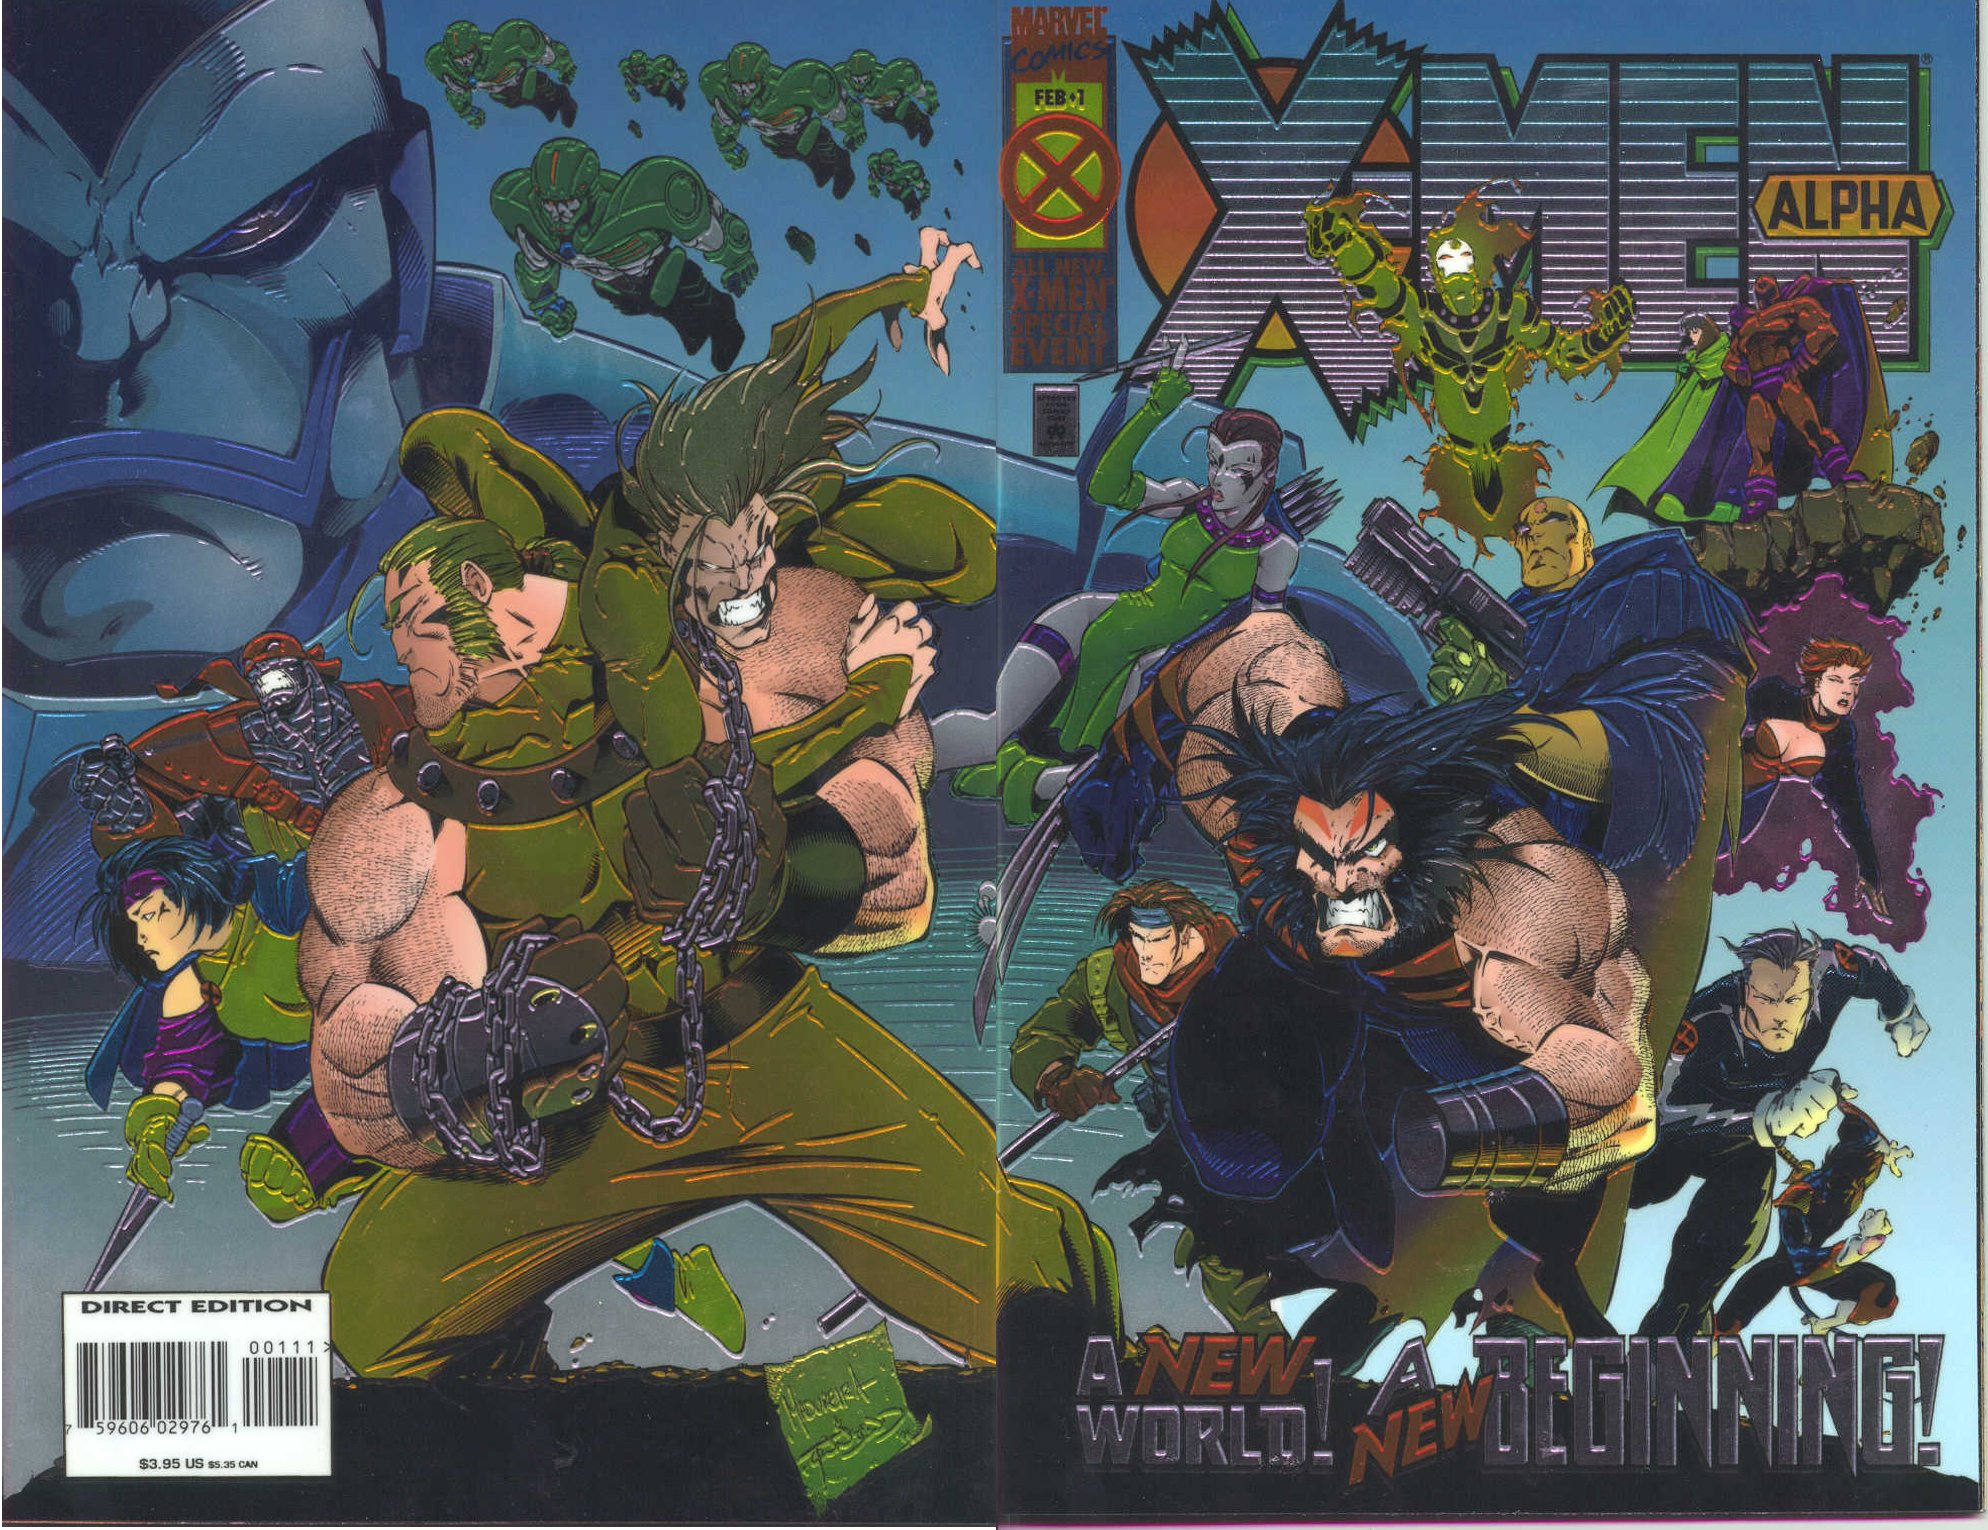 Details about   X-Men Alpha All New X-Men Special Even Feb 1 Marvel Comics #1 